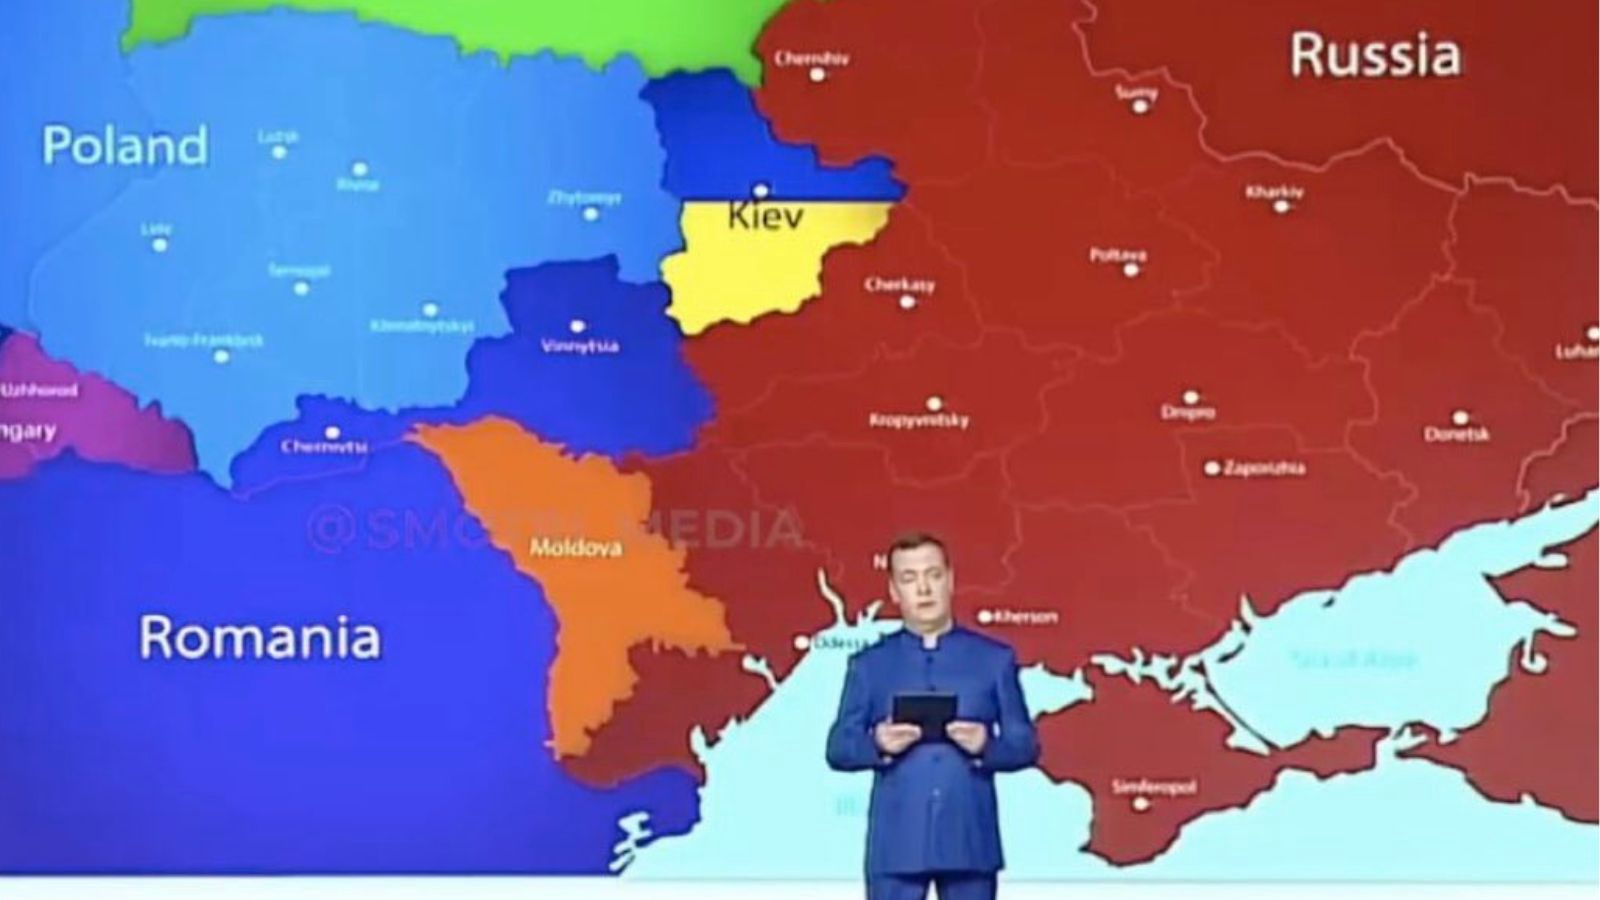 Pokazali mapę w rosyjskiej TV. Polskie MSZ reaguje